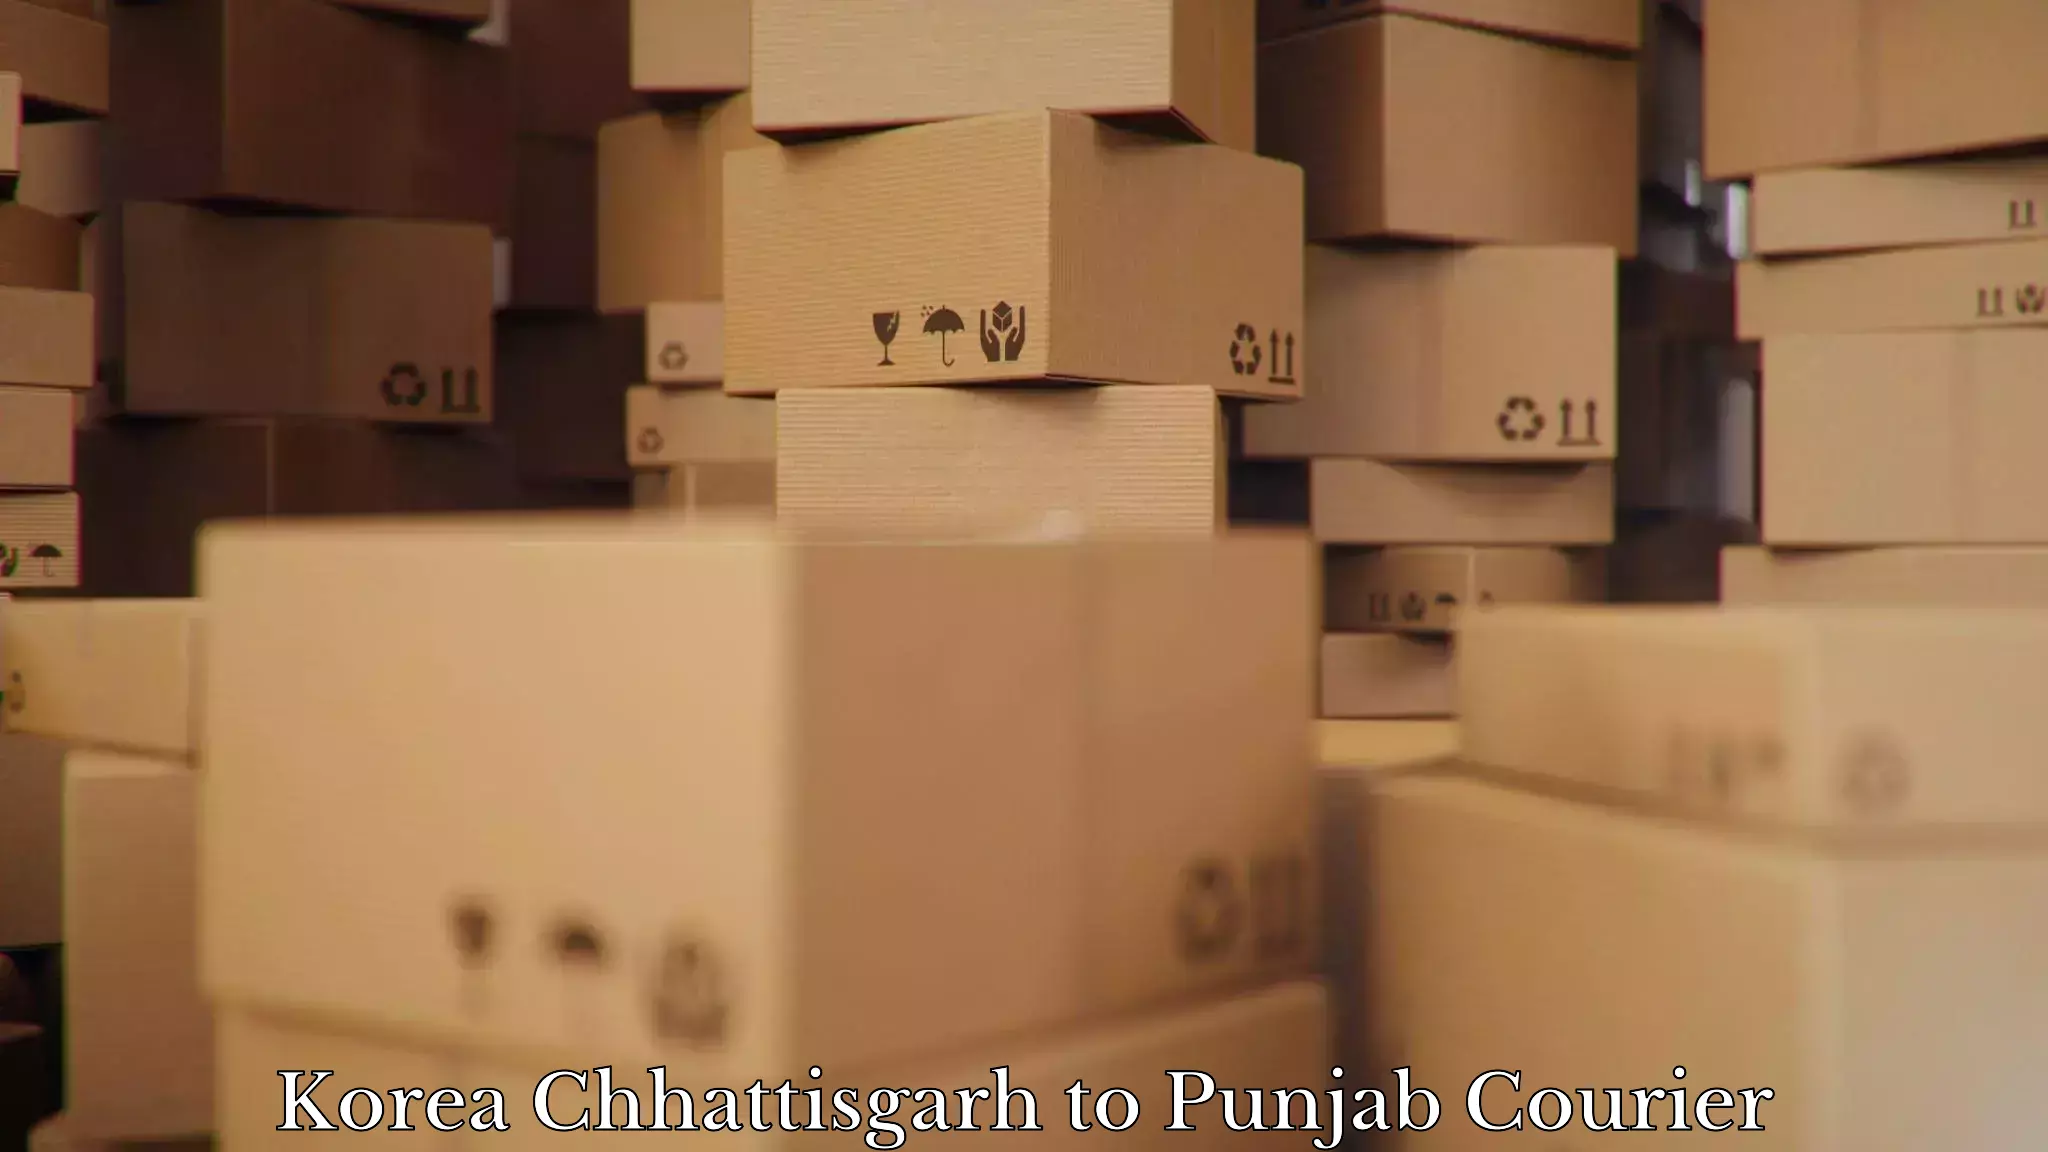 Furniture moving and handling in Korea Chhattisgarh to Punjab